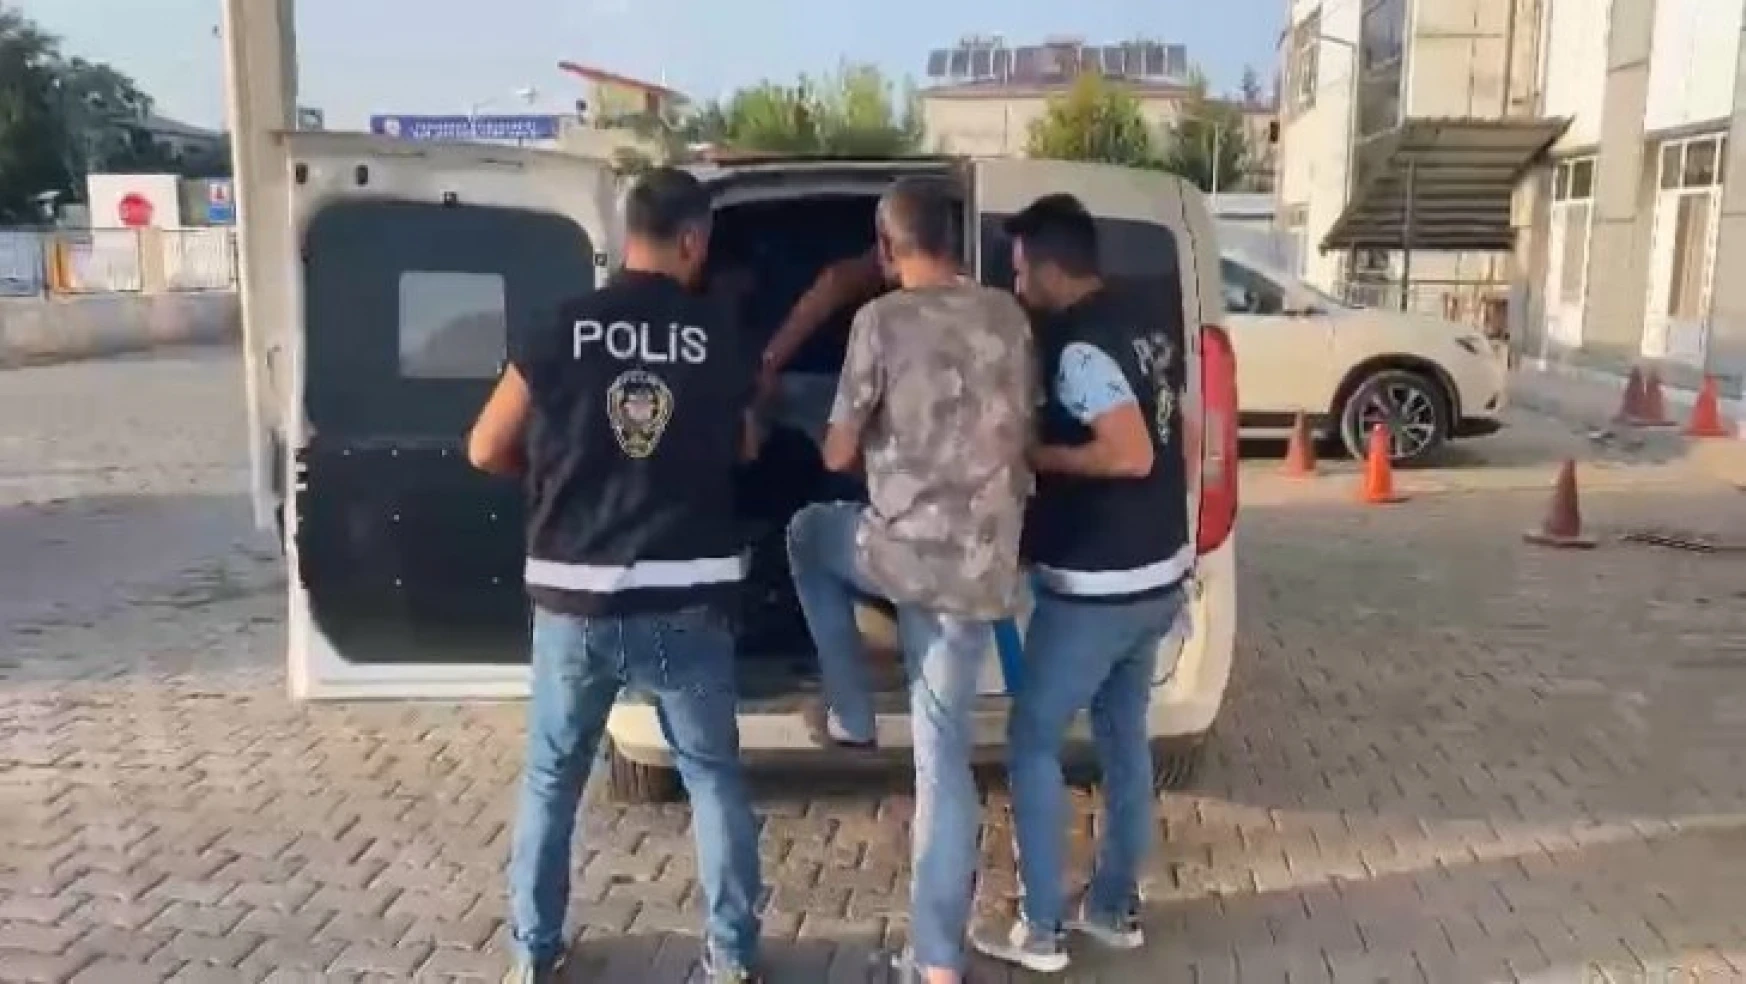 Elazığ'da İYİ Parti ilçe binasından hırsızlık yapan 2 şüpheli tutuklandı